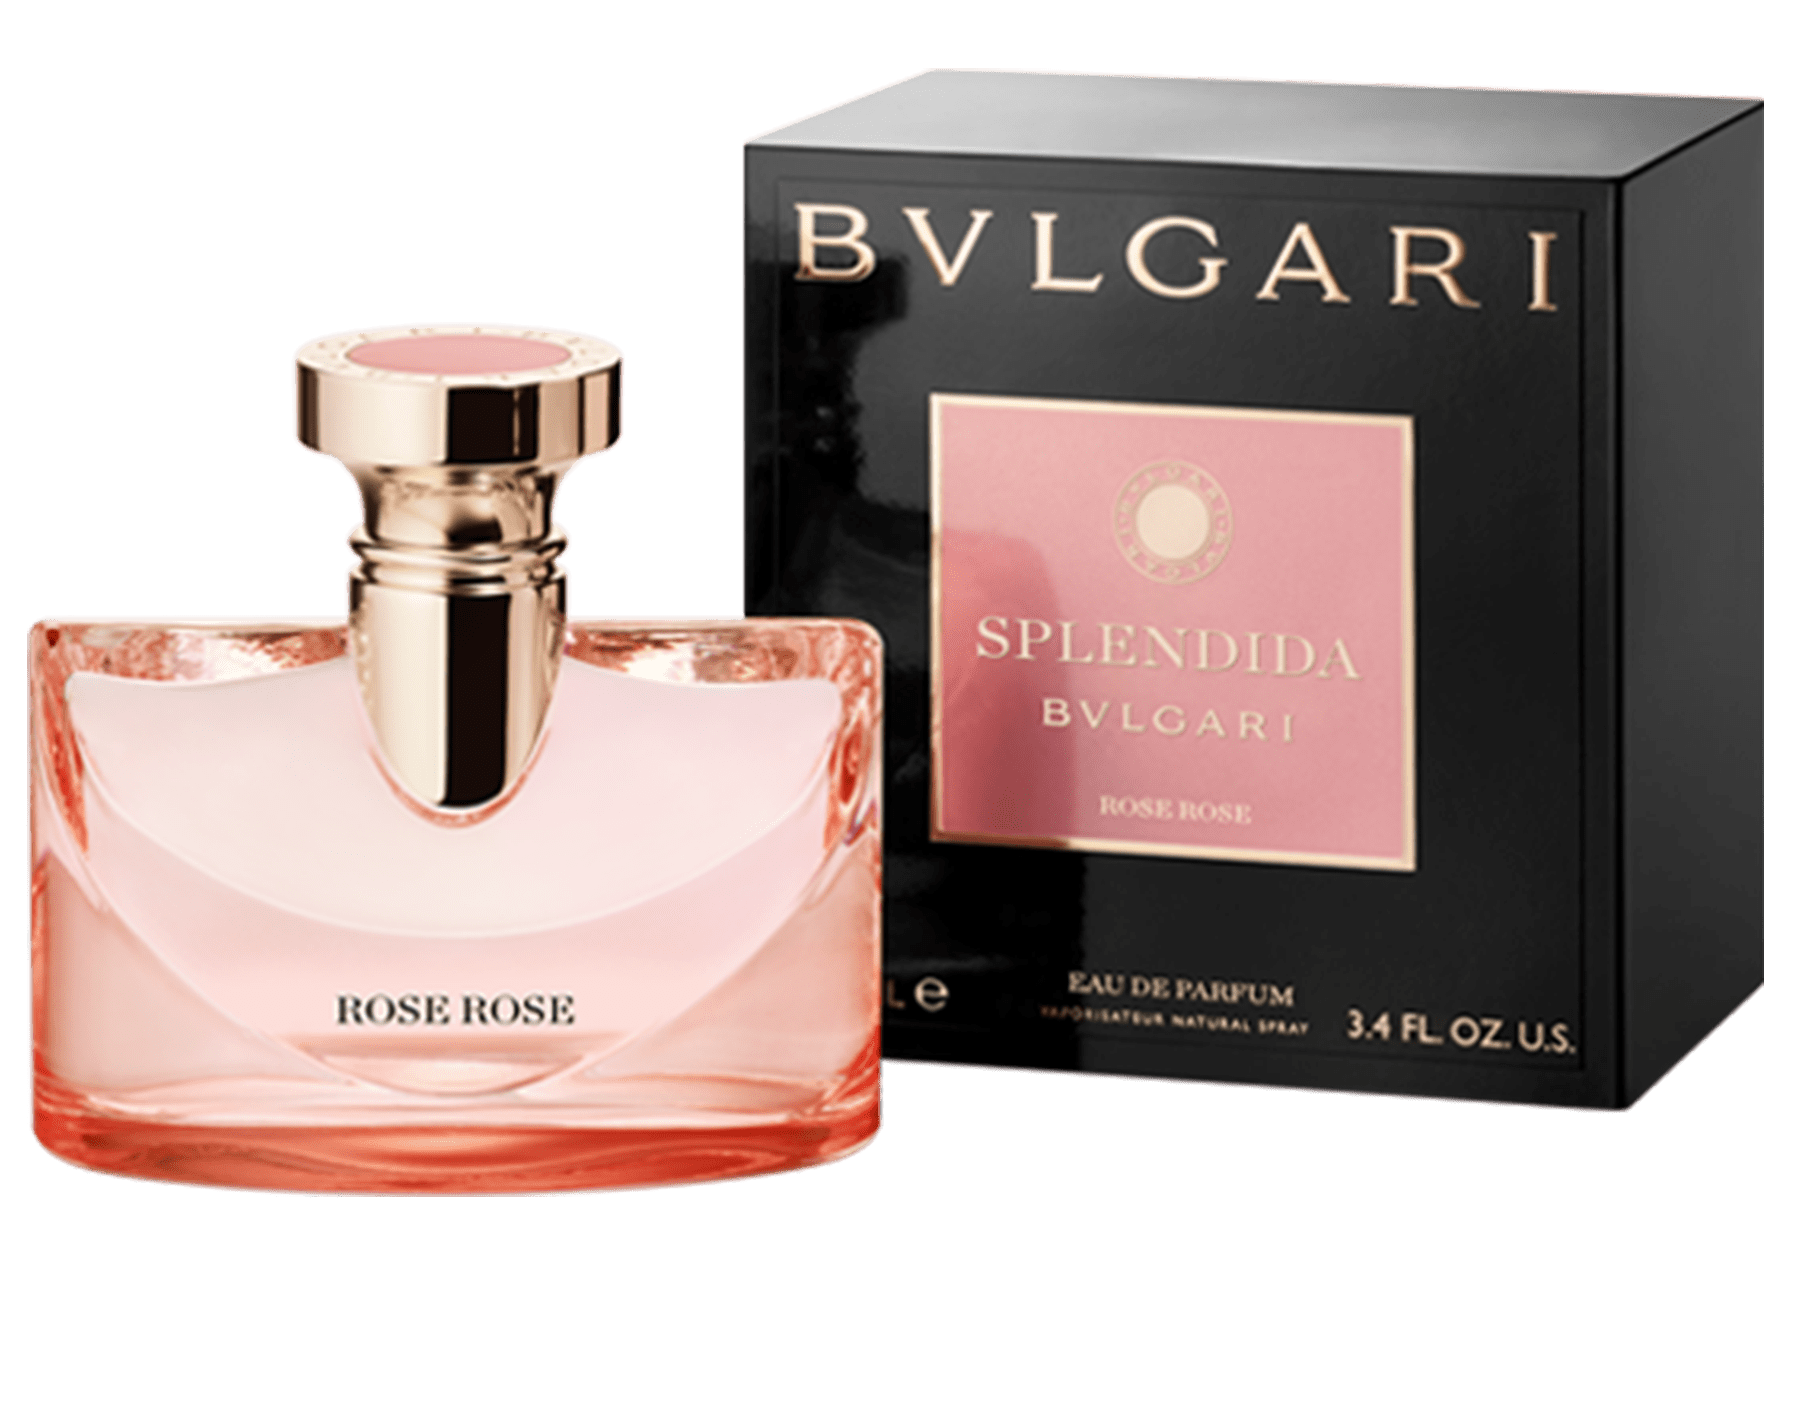 newest bvlgari perfume